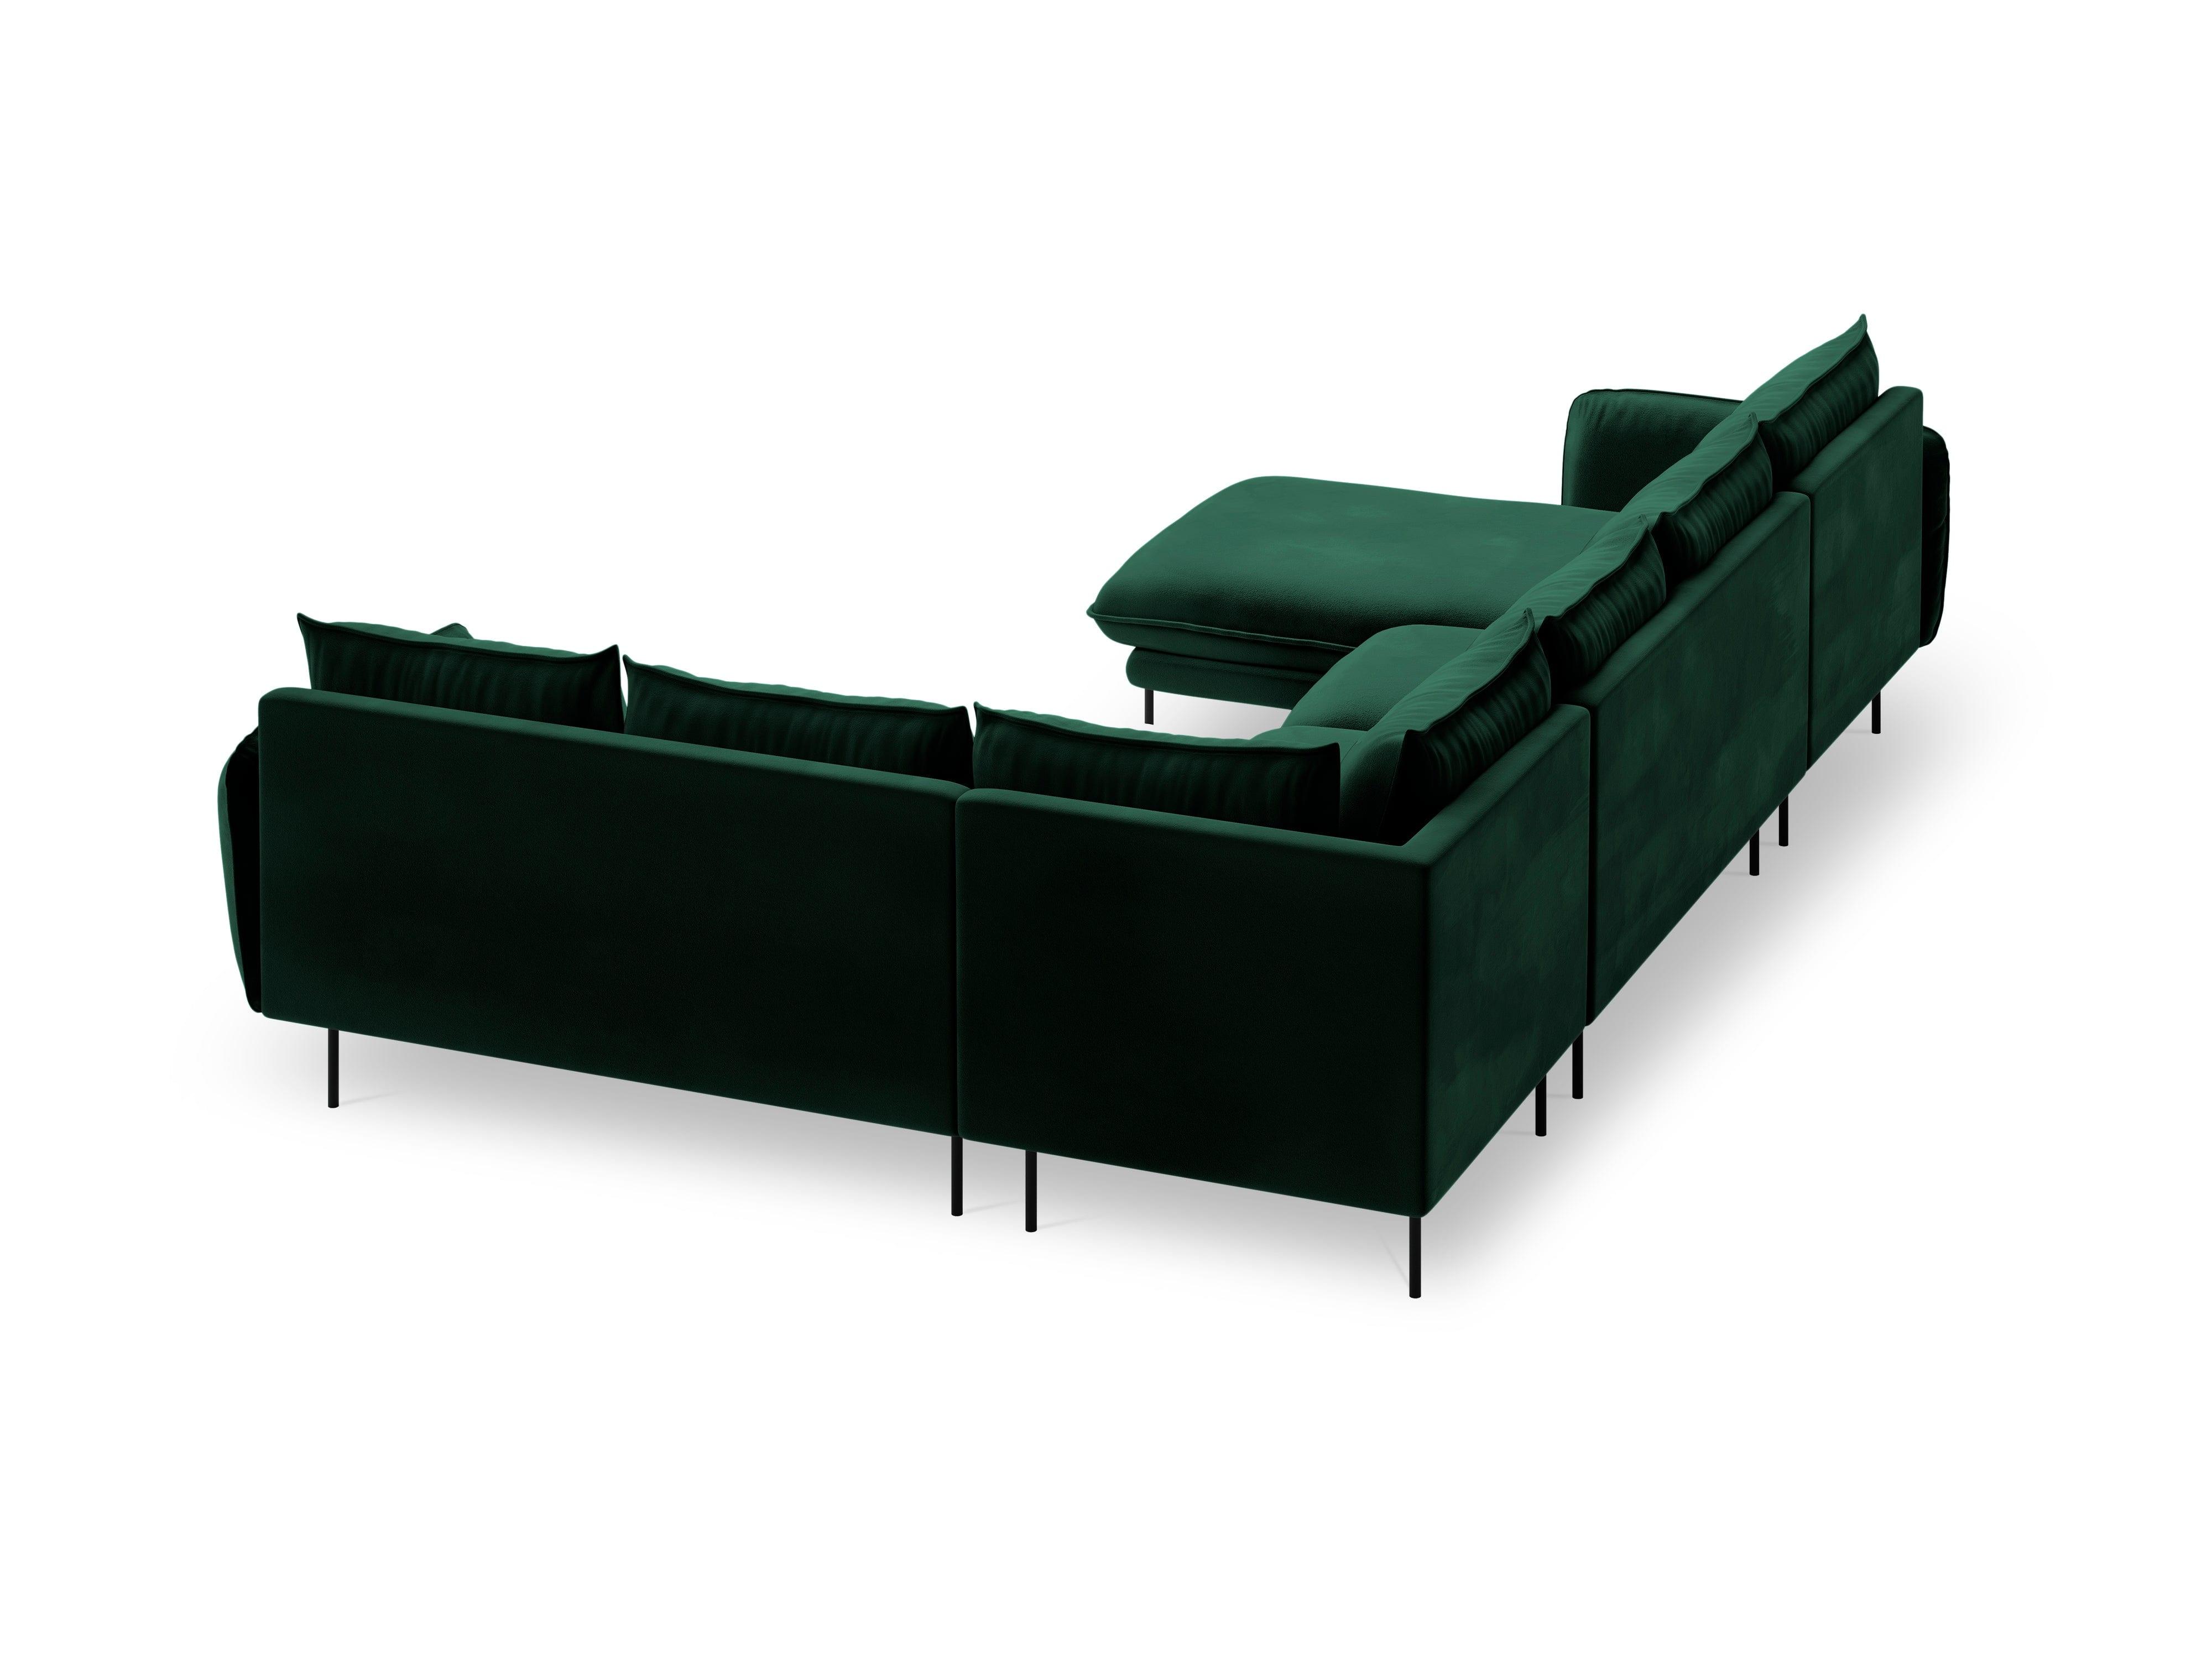 Narożnik prawostronny aksamitny panoramiczny VIENNA zielony z czarną podstawą, Cosmopolitan Design, Eye on Design